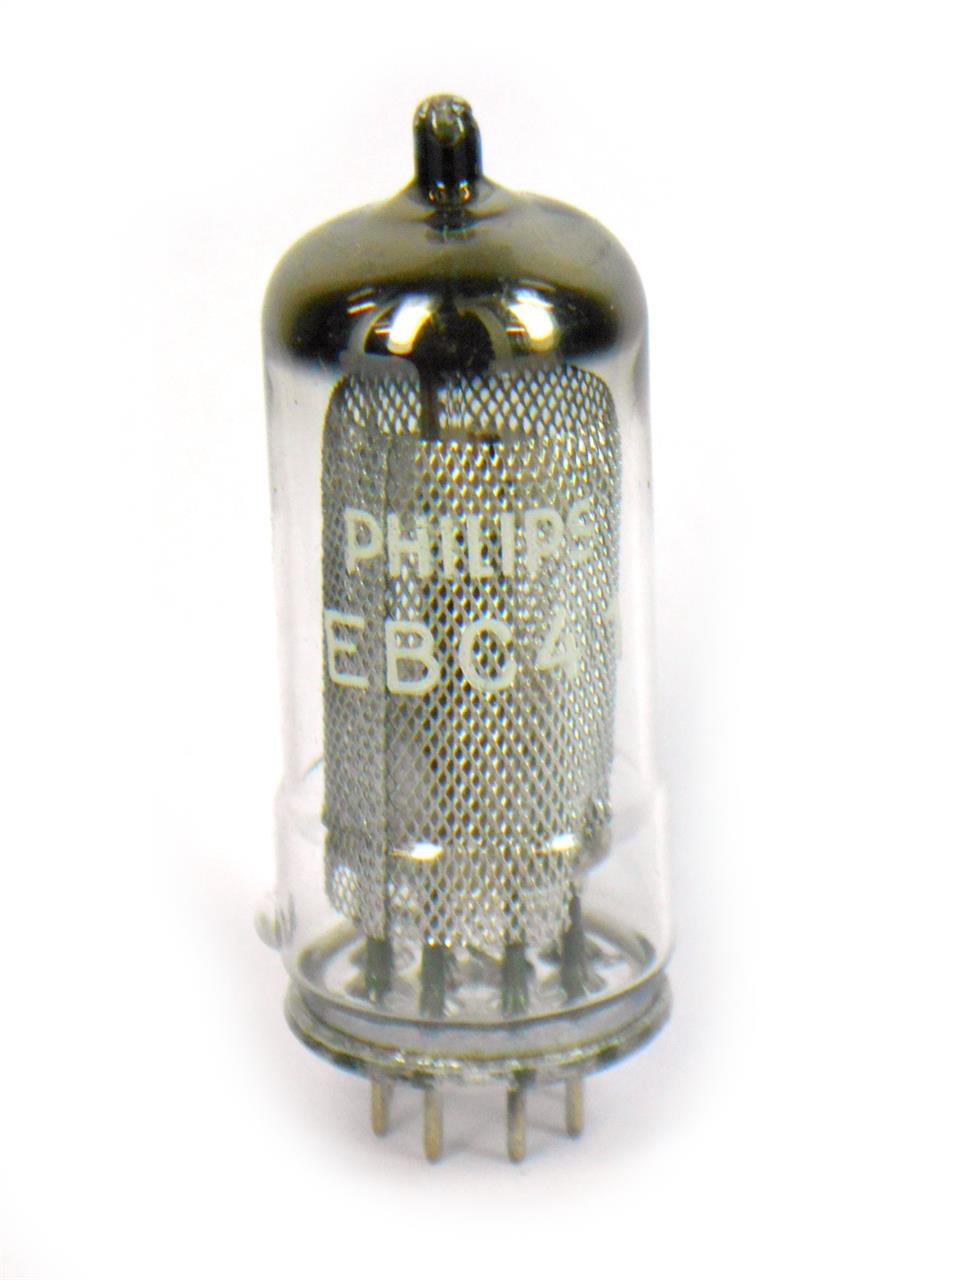 Válvulas Triodo com Diodos Conjugados - Válvula EBC41 6CV7 Philips Miniwatt